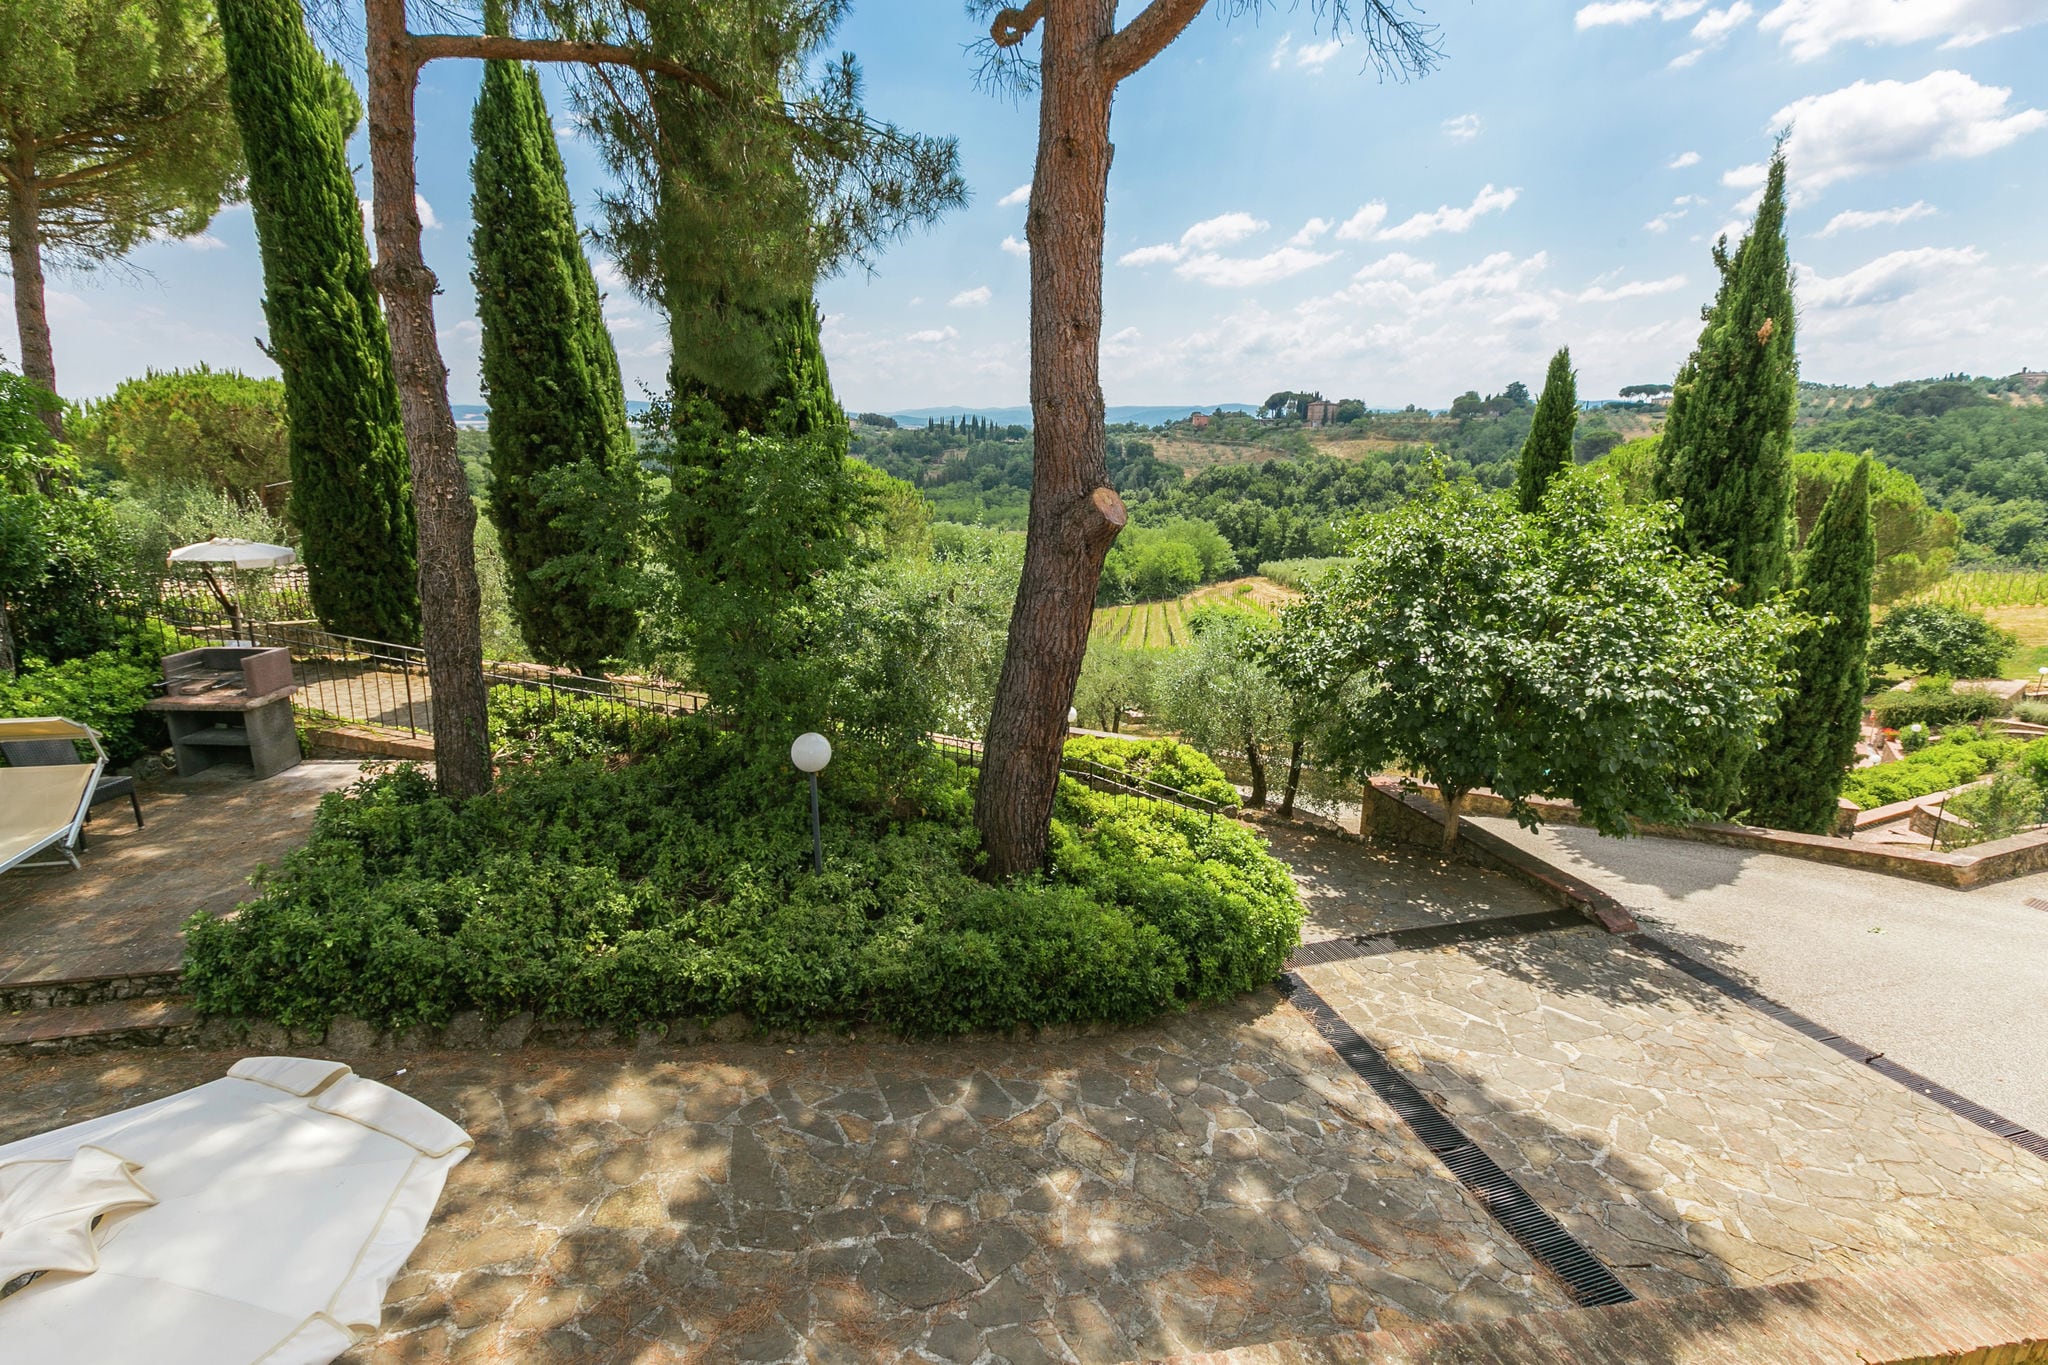 Vakantiehuis op 5 km van Siena in de heuvels, zwembad en tuin